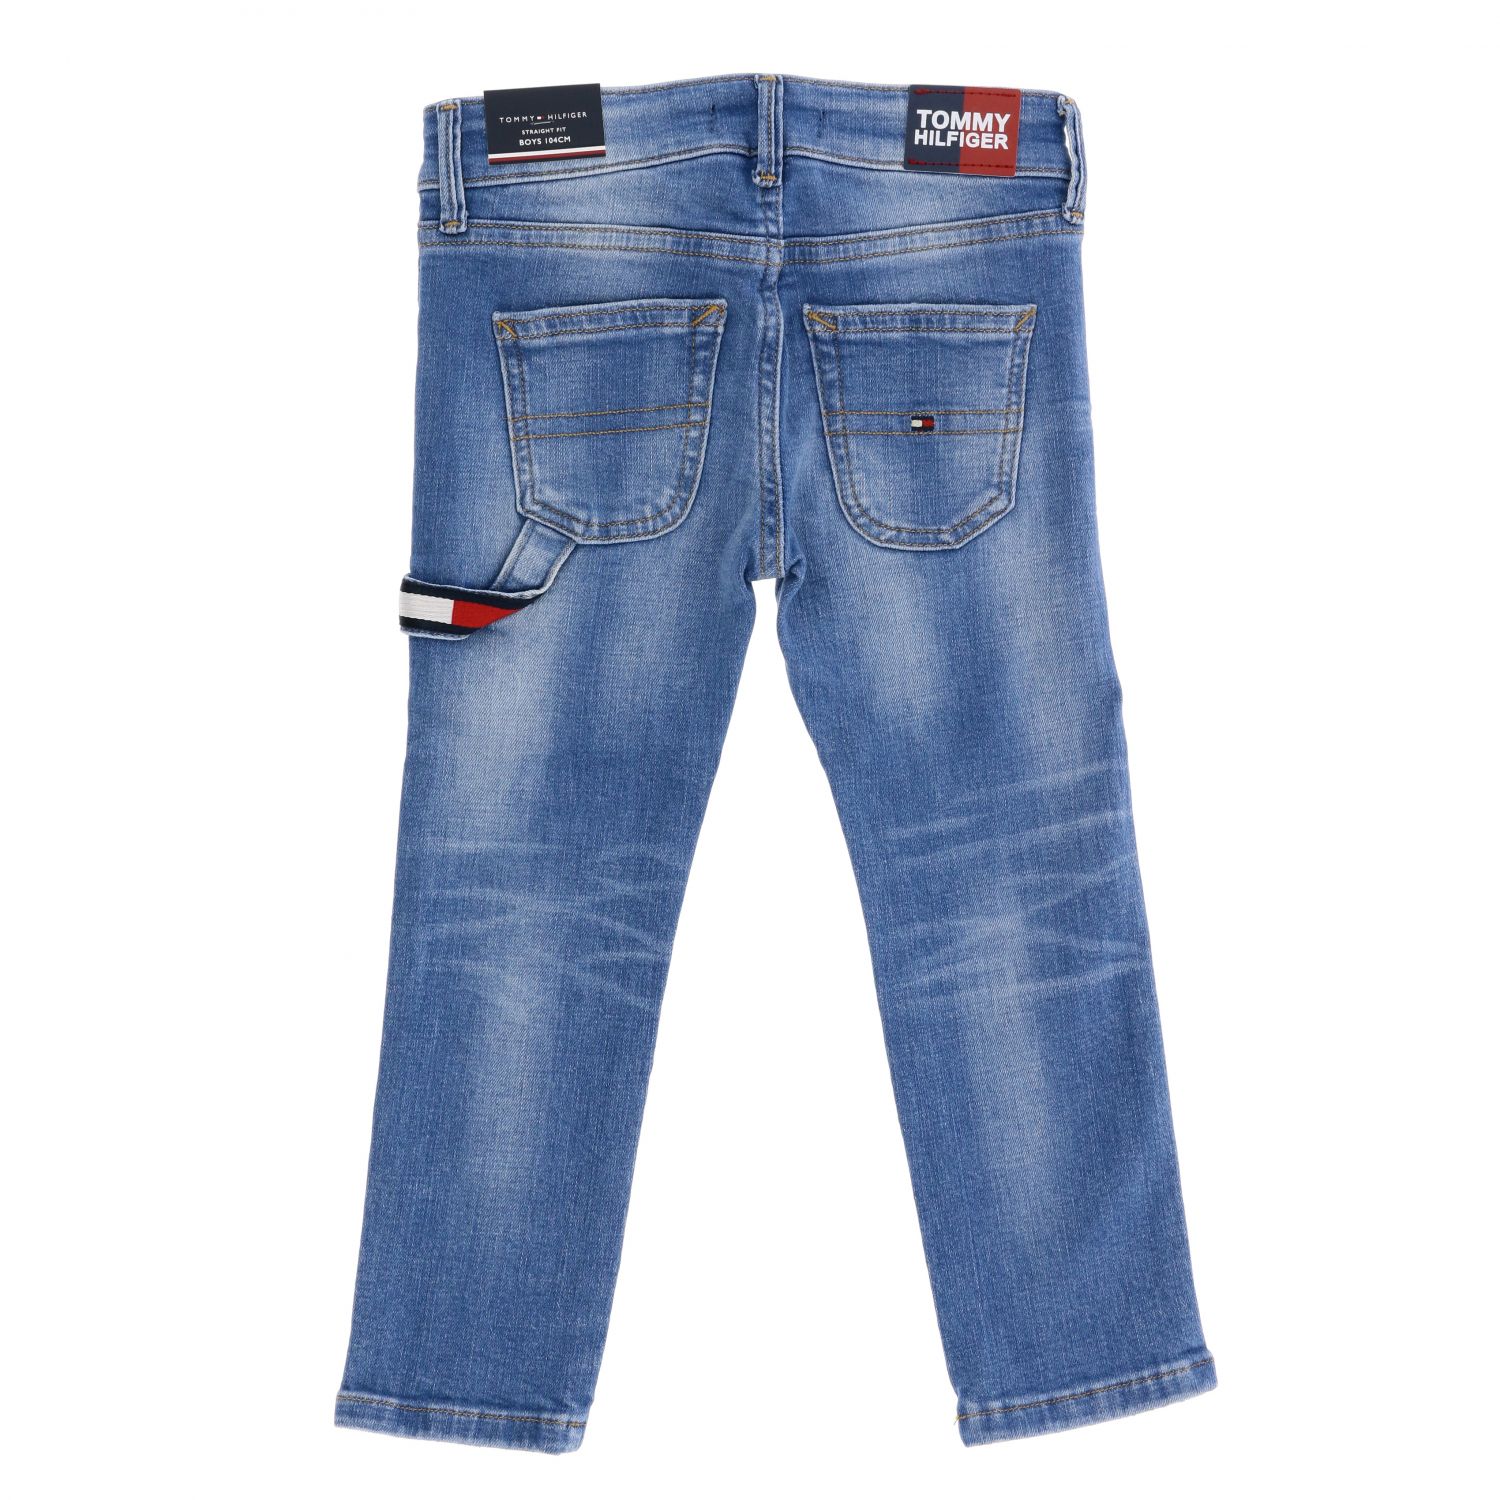 Meestal toevoegen aan Mm Tommy Hilfiger Outlet: jeans in used denim - Denim | Tommy Hilfiger jeans  KB0KB05383 online on GIGLIO.COM